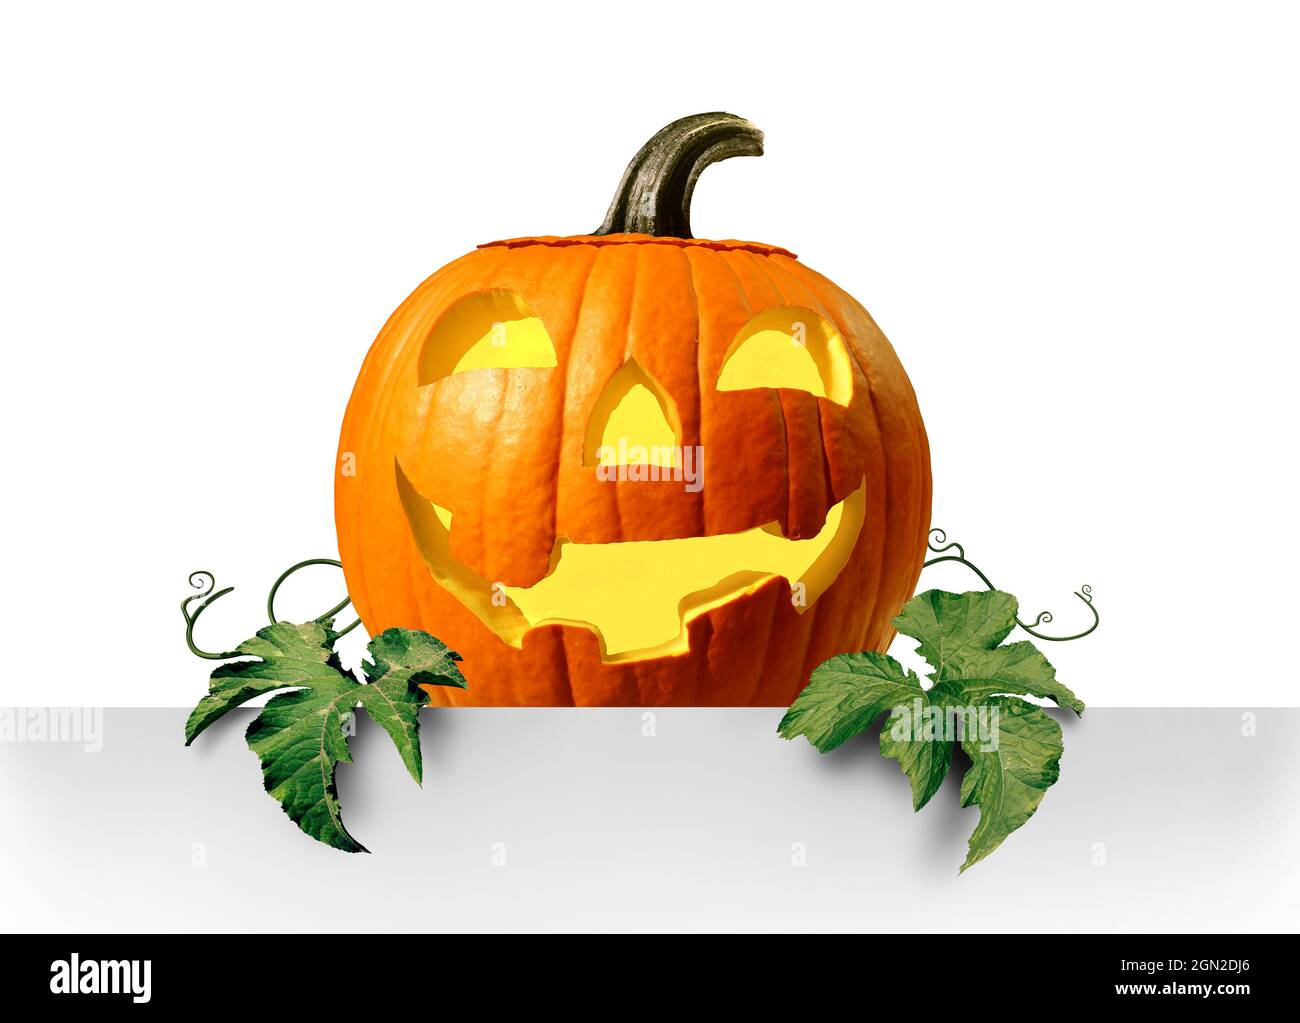 Bonne promotion de citrouille d'Halloween en tant que mignonne citrouille lanterne portant une affiche vierge comme symbole de la saison d'automne pour les événements de trick ou de traite. Banque D'Images